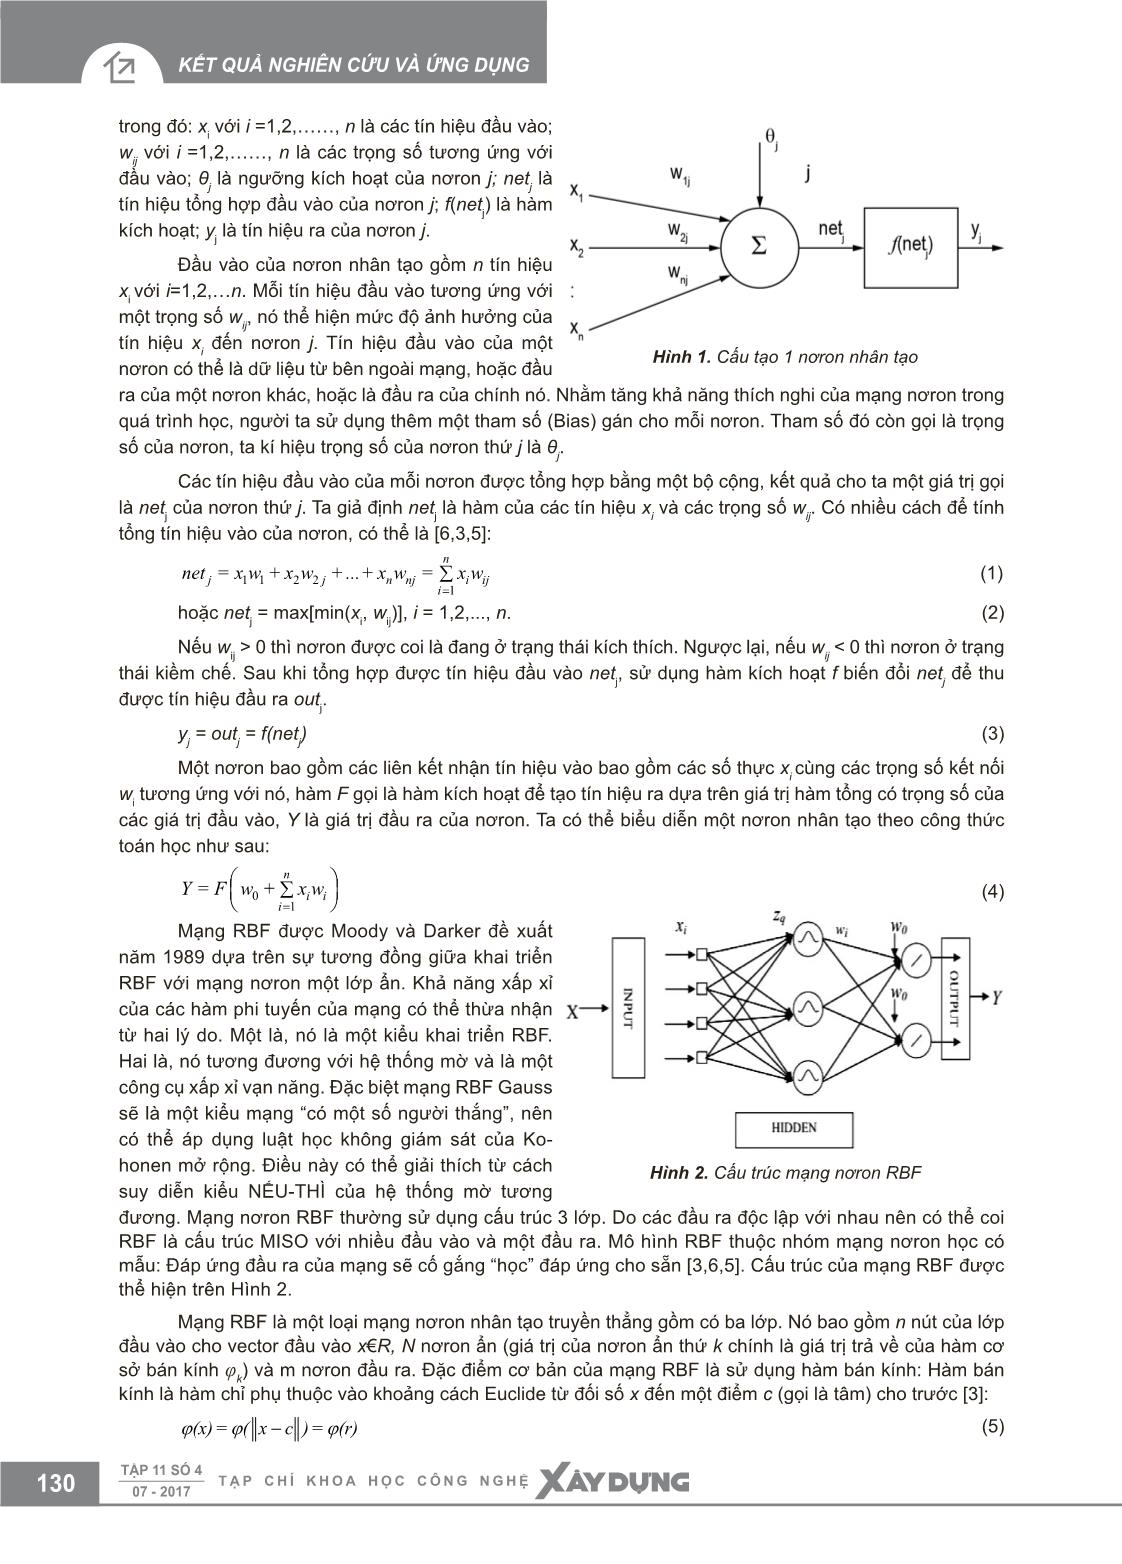 Chẩn đoán tình trạng kỹ thuật hộp số cơ khí trên cơ sở mạng nơron RBF trang 2